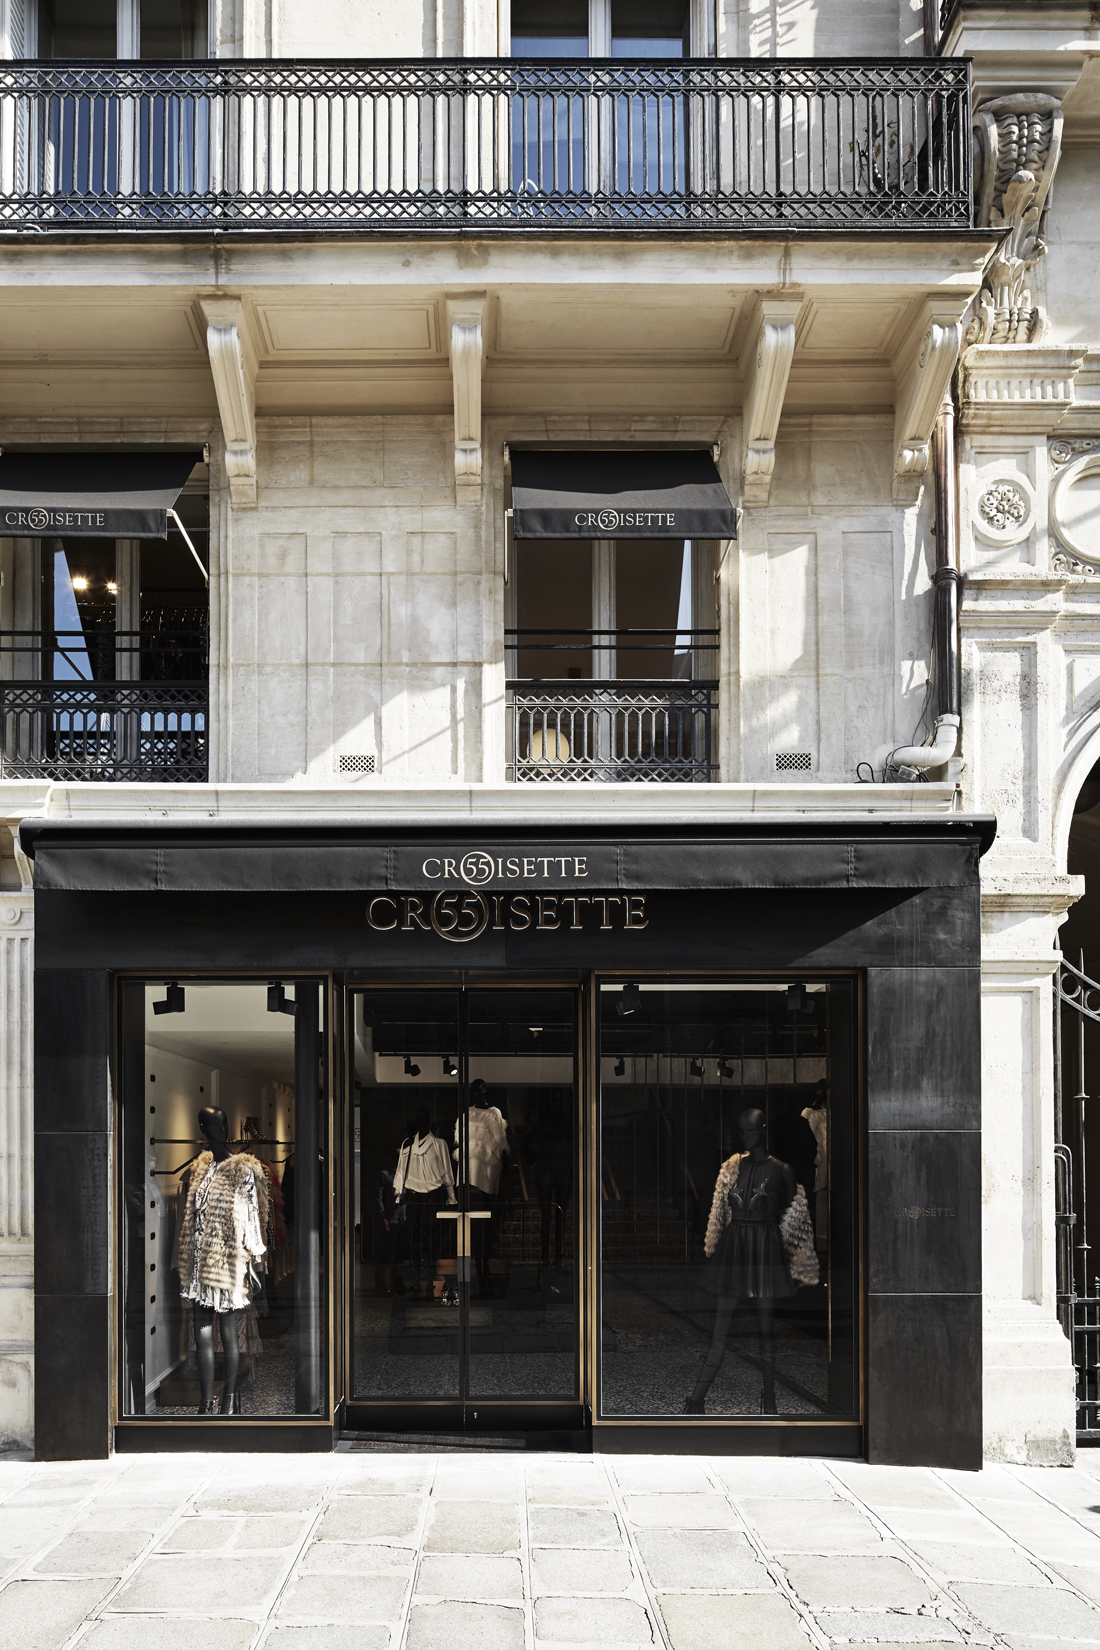 55 Croisette - A Parisian Boutique by Humbert & Poyet